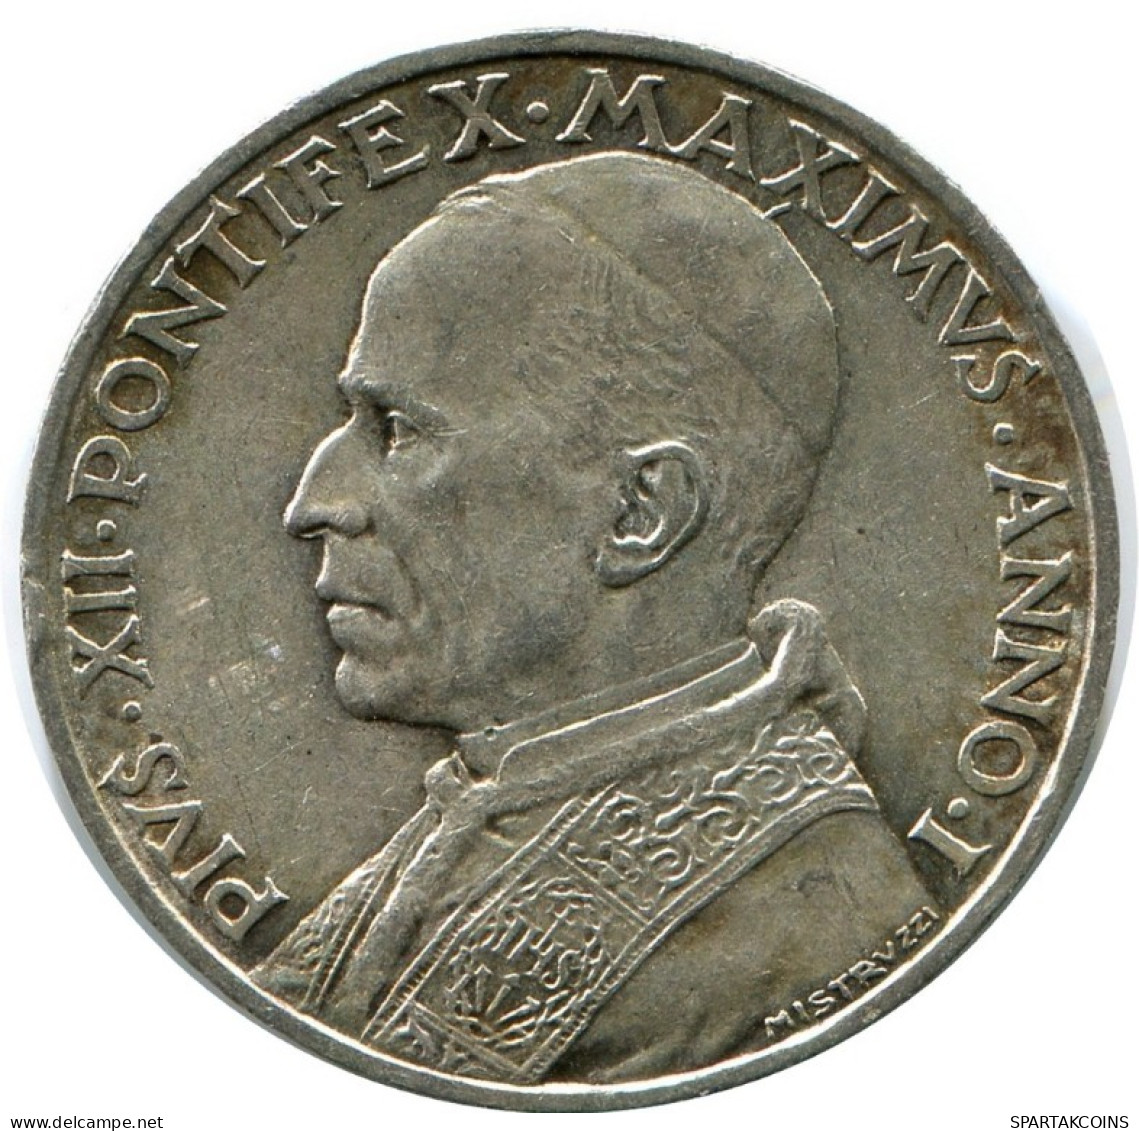 5 LIRE 1939 VATICAN Coin Pius XII (1939-1958) Silver #AH363.13.U.A - Vatican